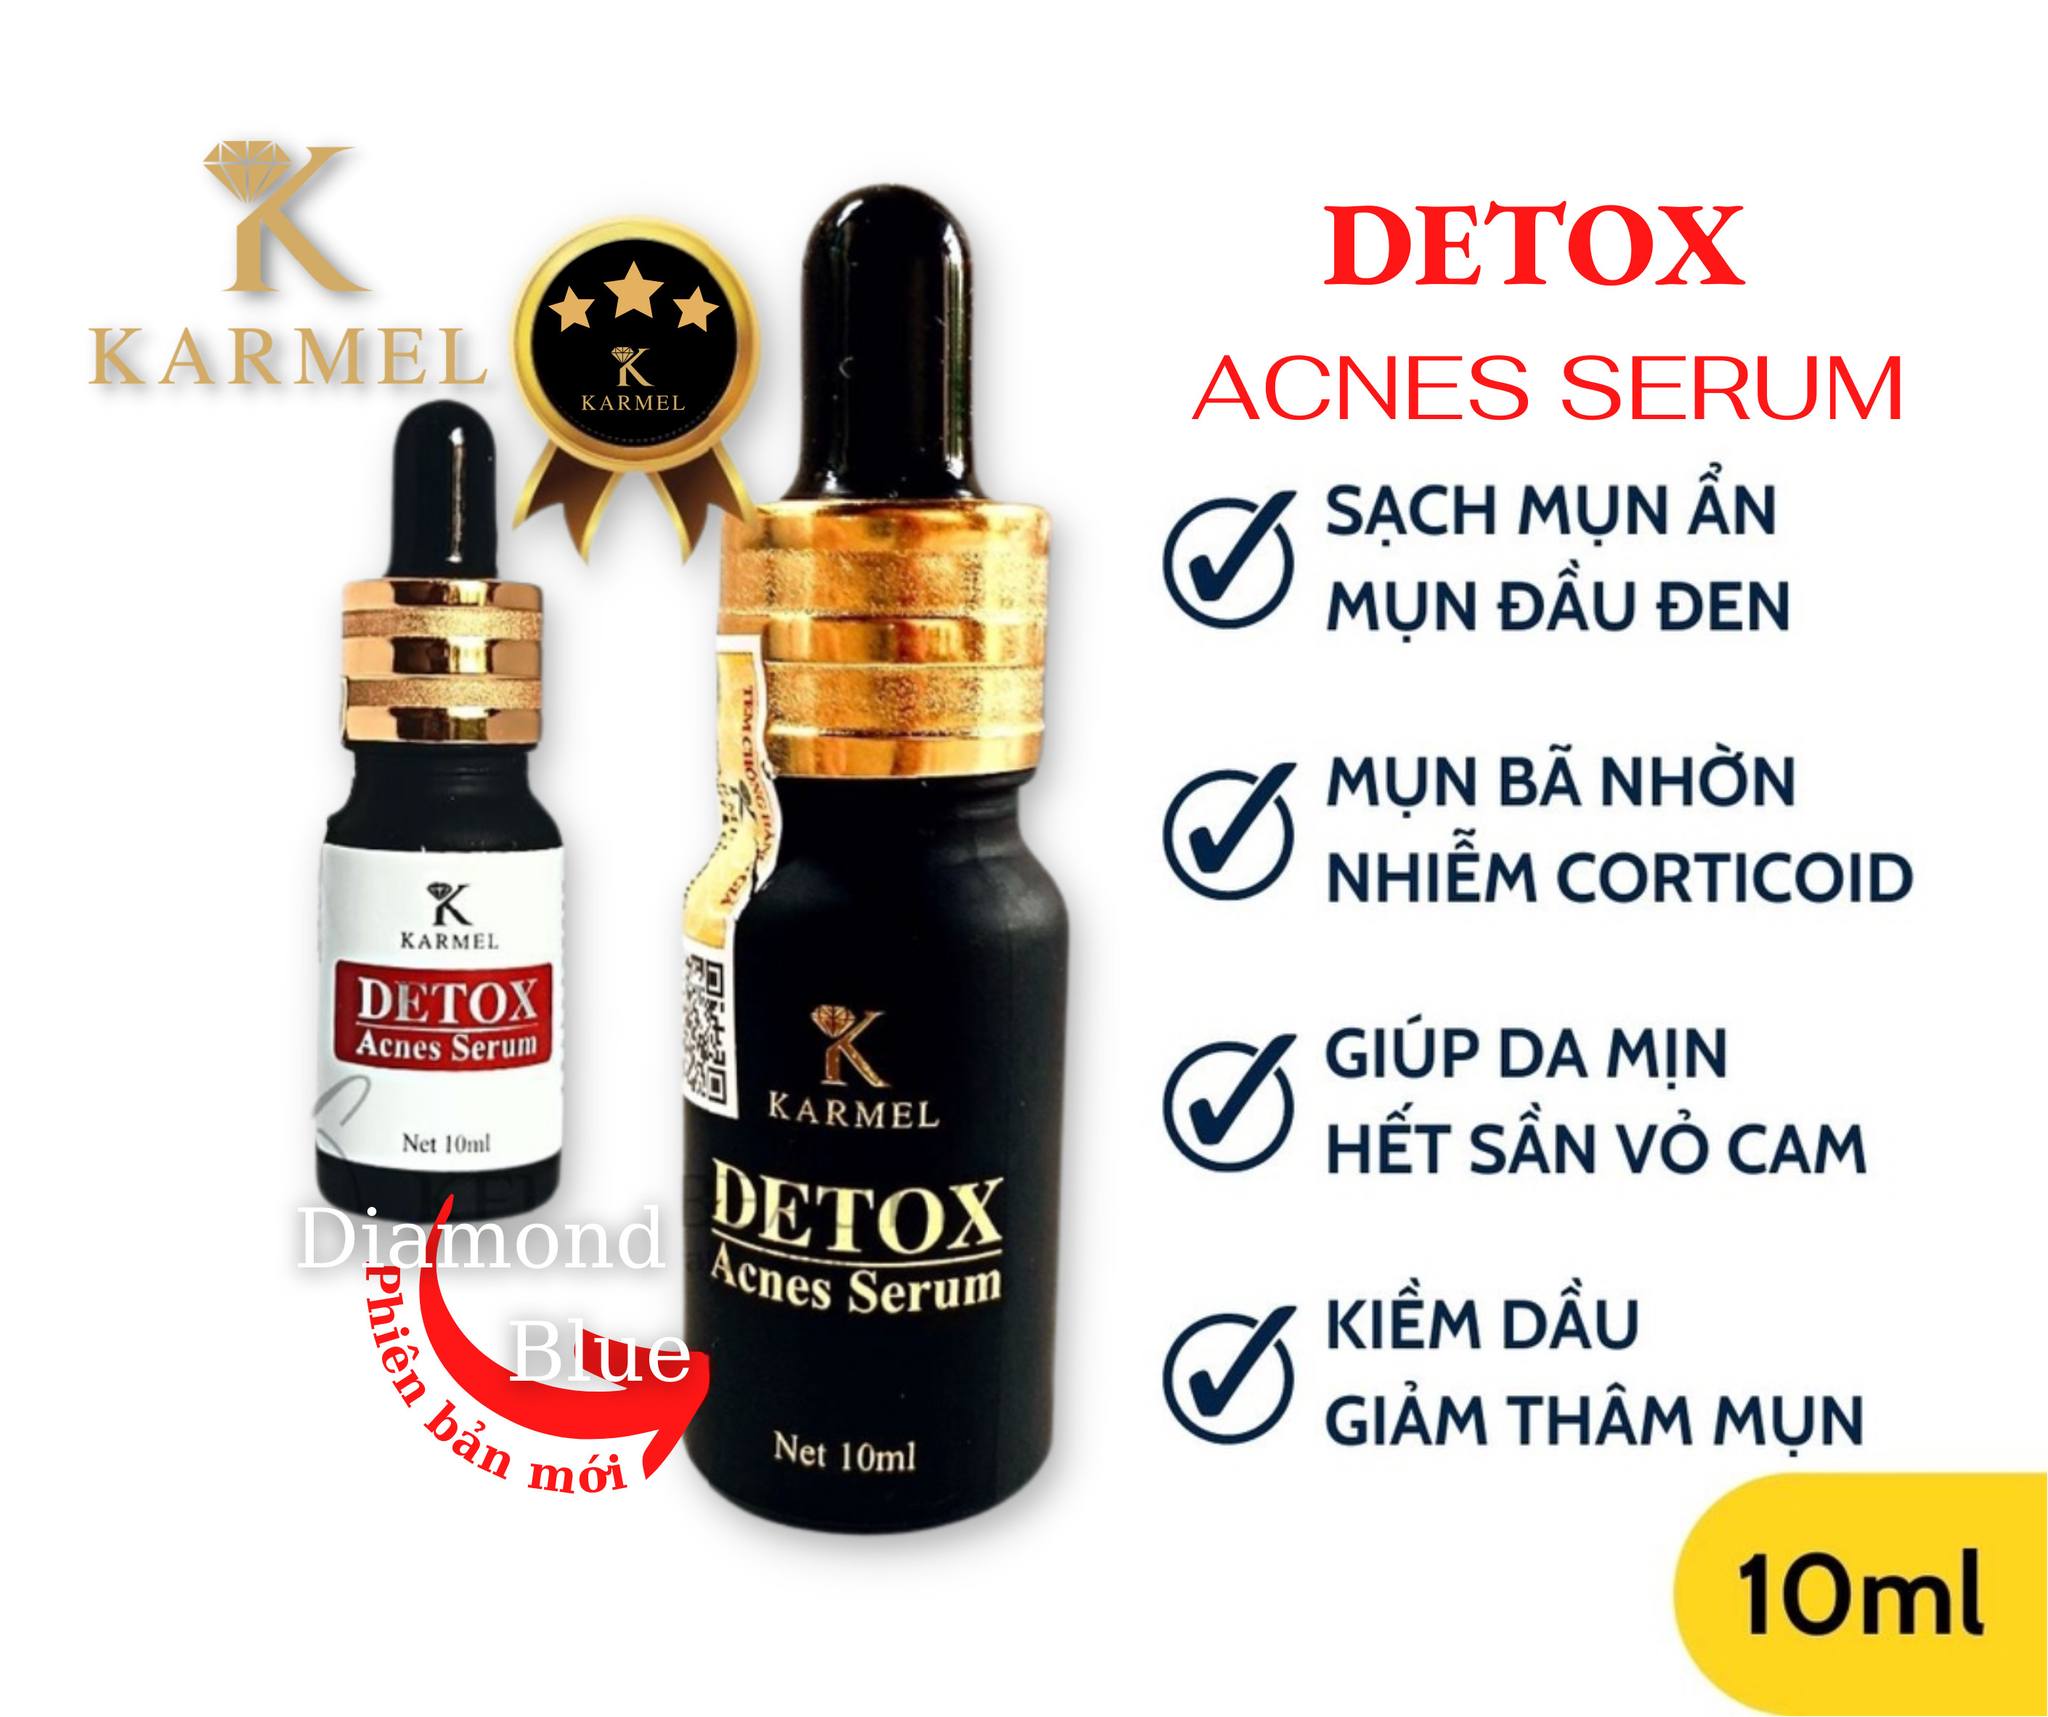 SERUM MỤN DETOX ACNES KARMEL 10ml -Ngừa Mụn, mờ vết thâm, mờ nám, tái tạo da, dưỡng trắng da ( mẫu mới )